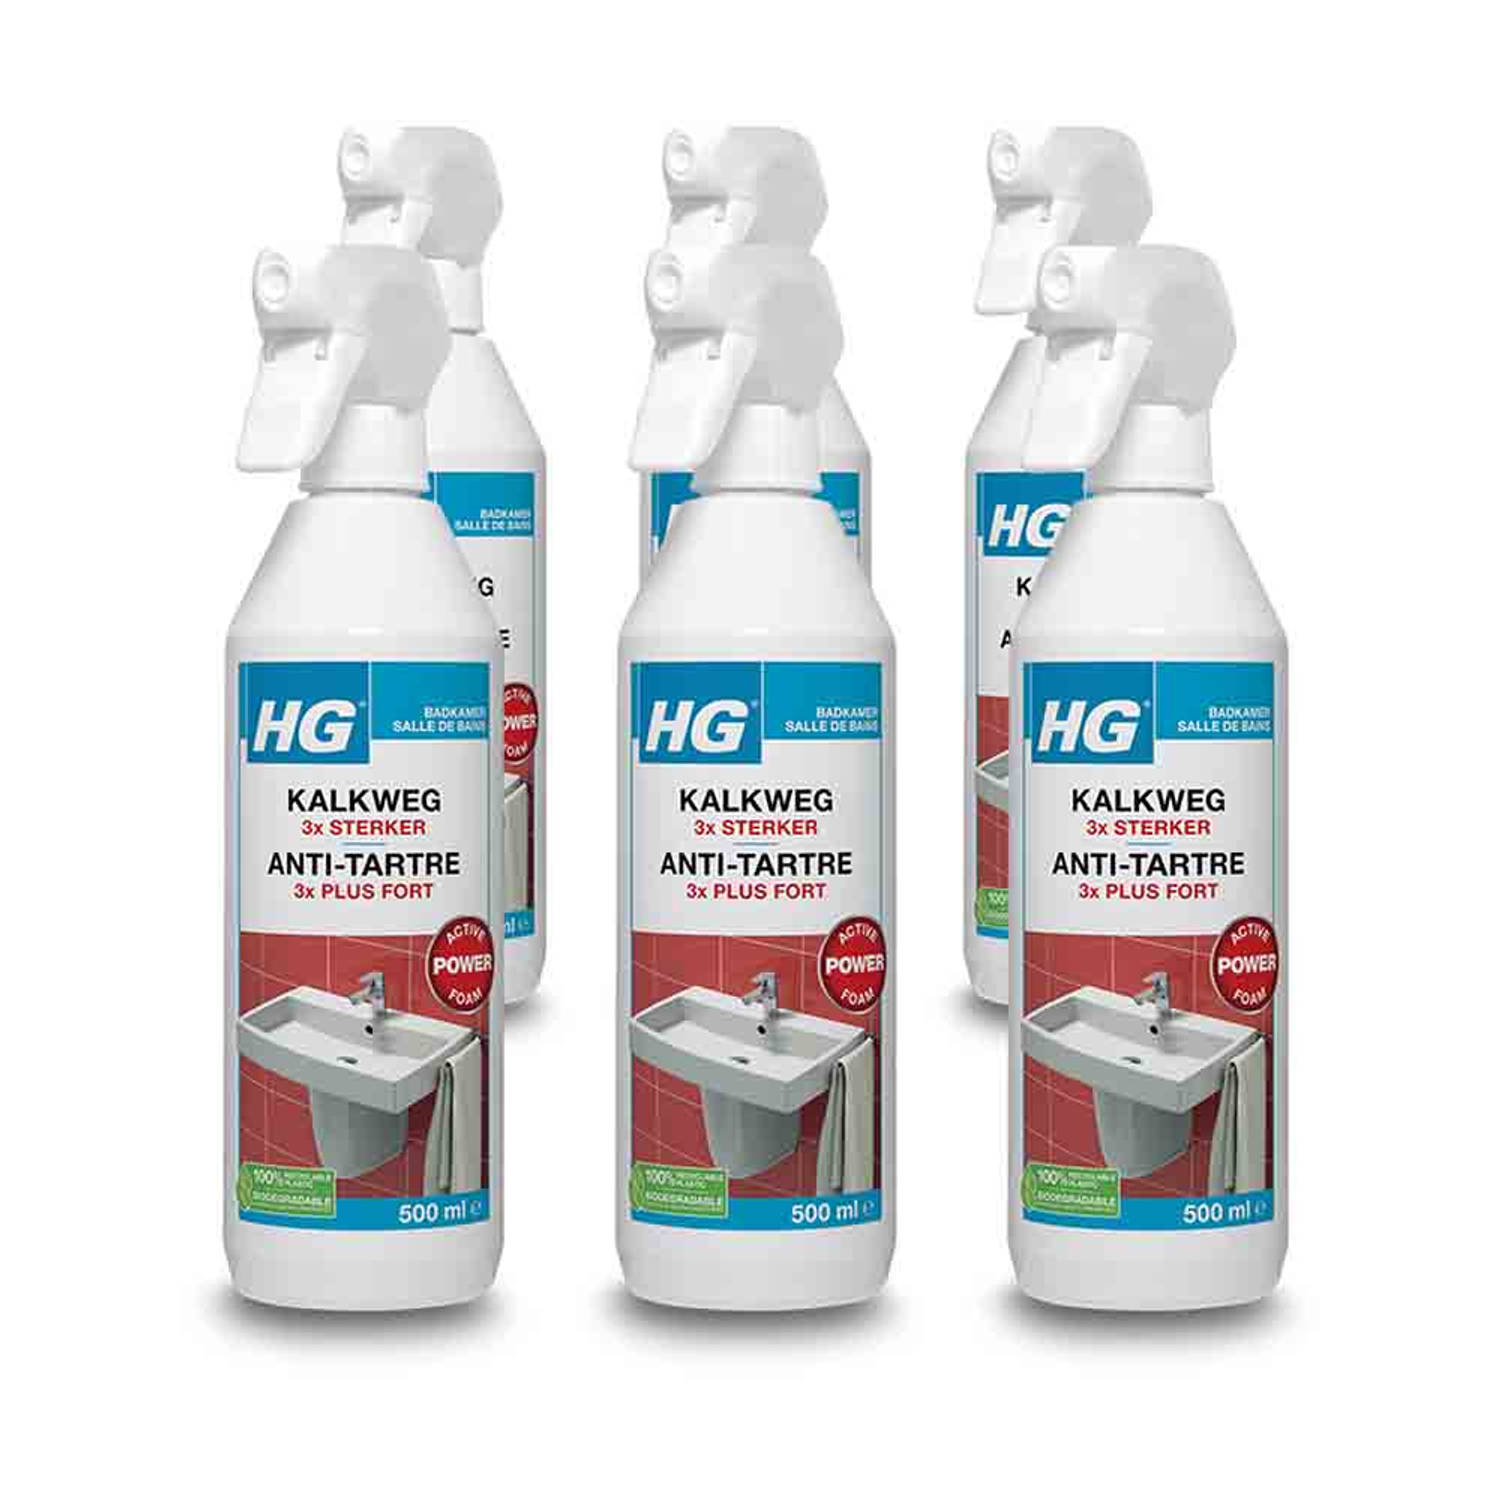 HG kalkweg schuimspray 3x sterker 500 ml - 6 stuks